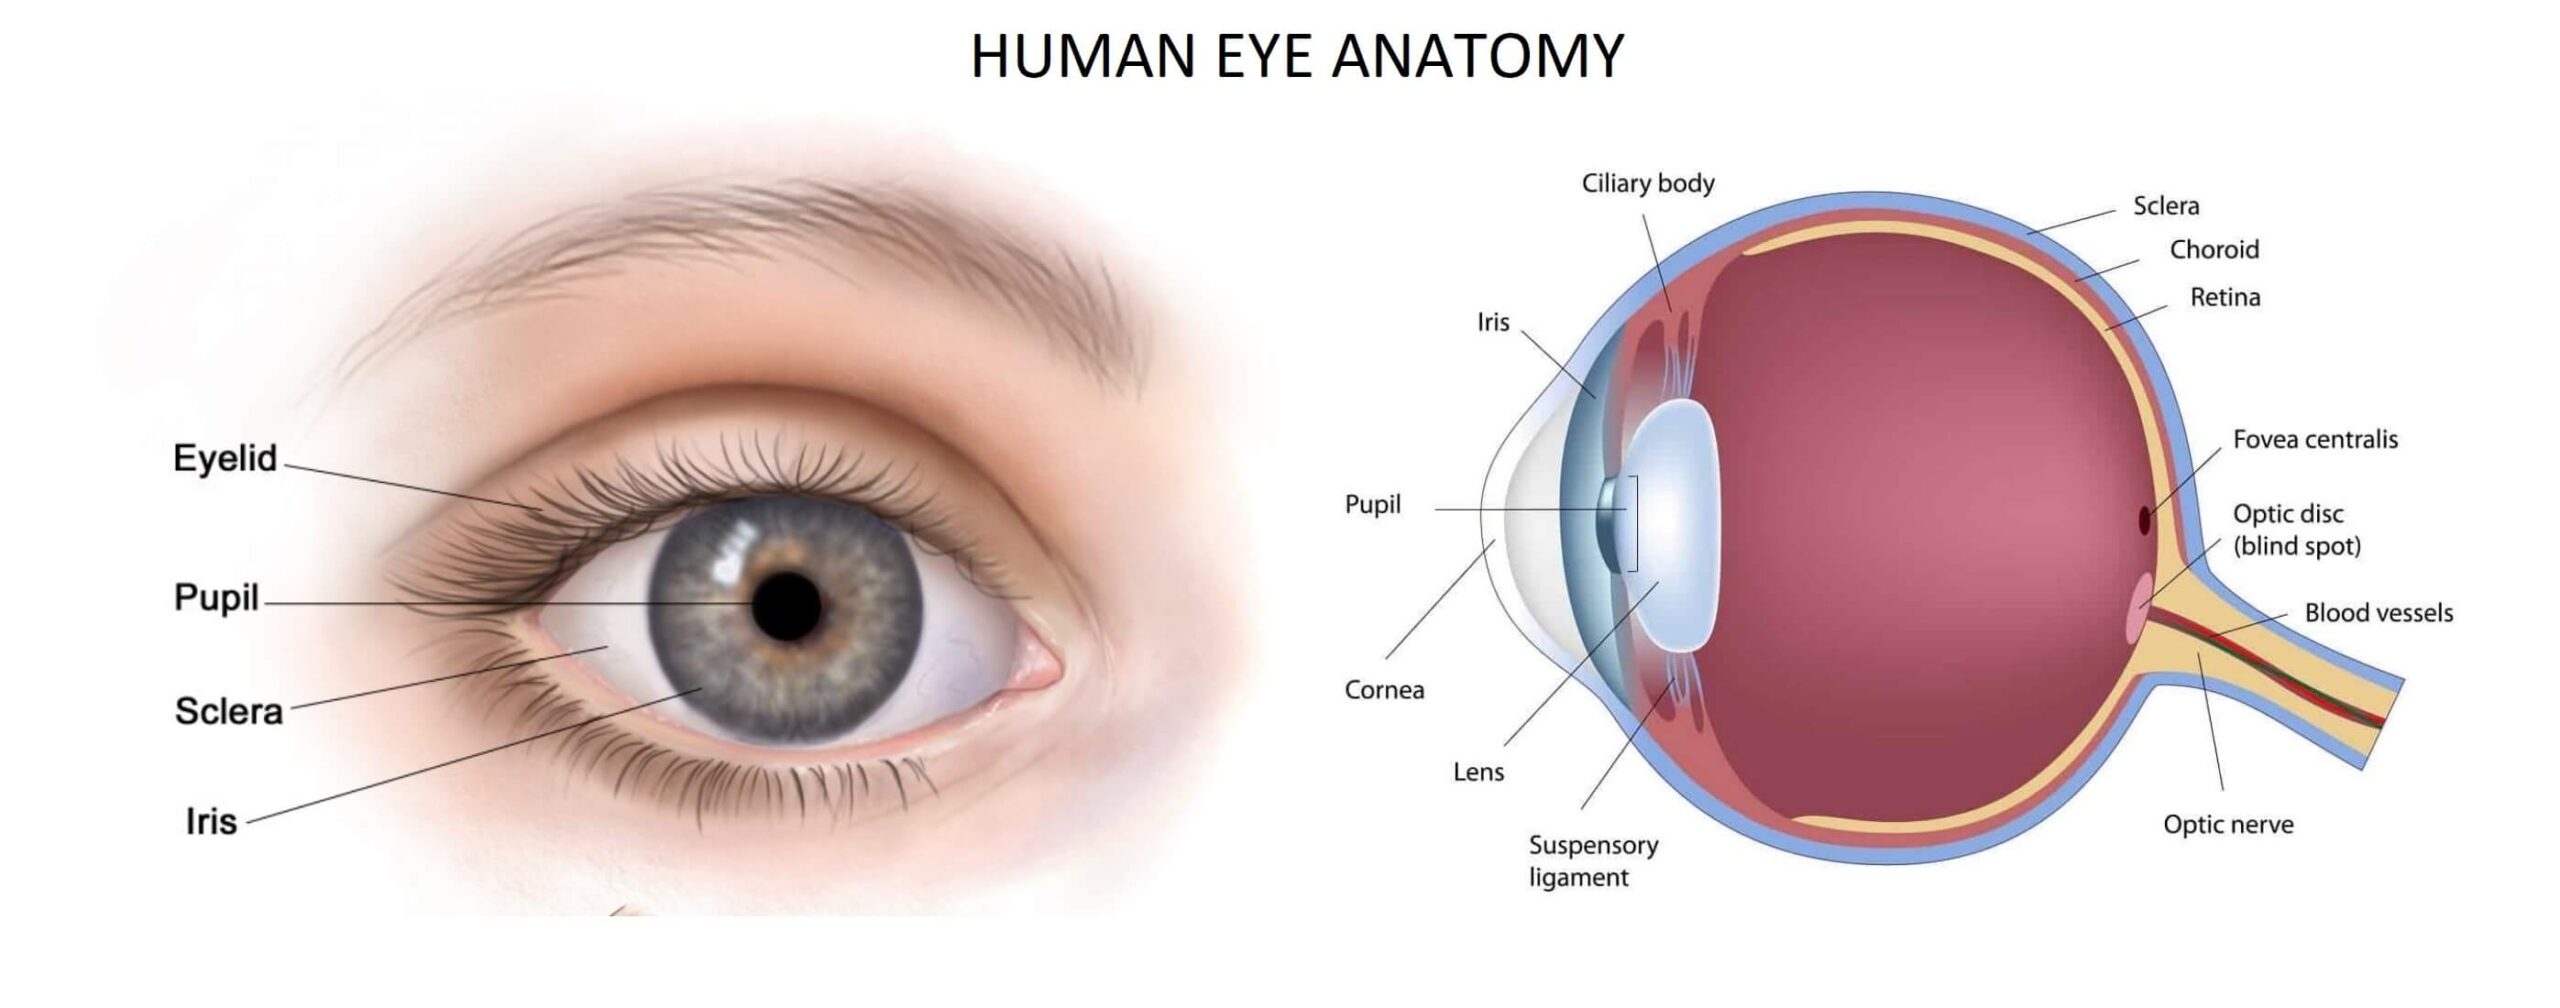 anatomy of human eye